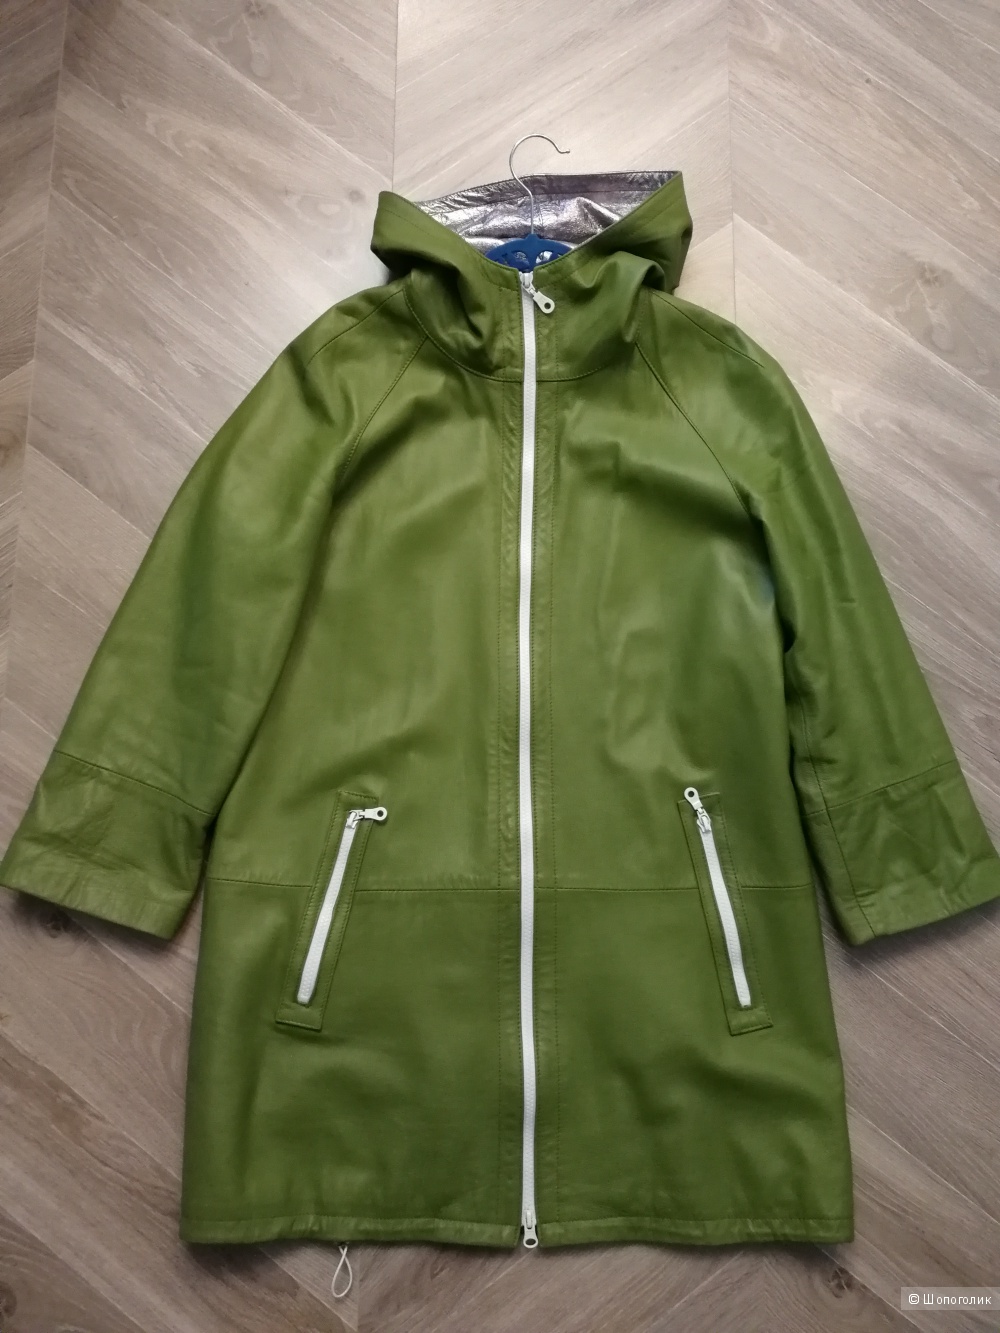 Кожаная куртка итальянского бренда 8, размер S